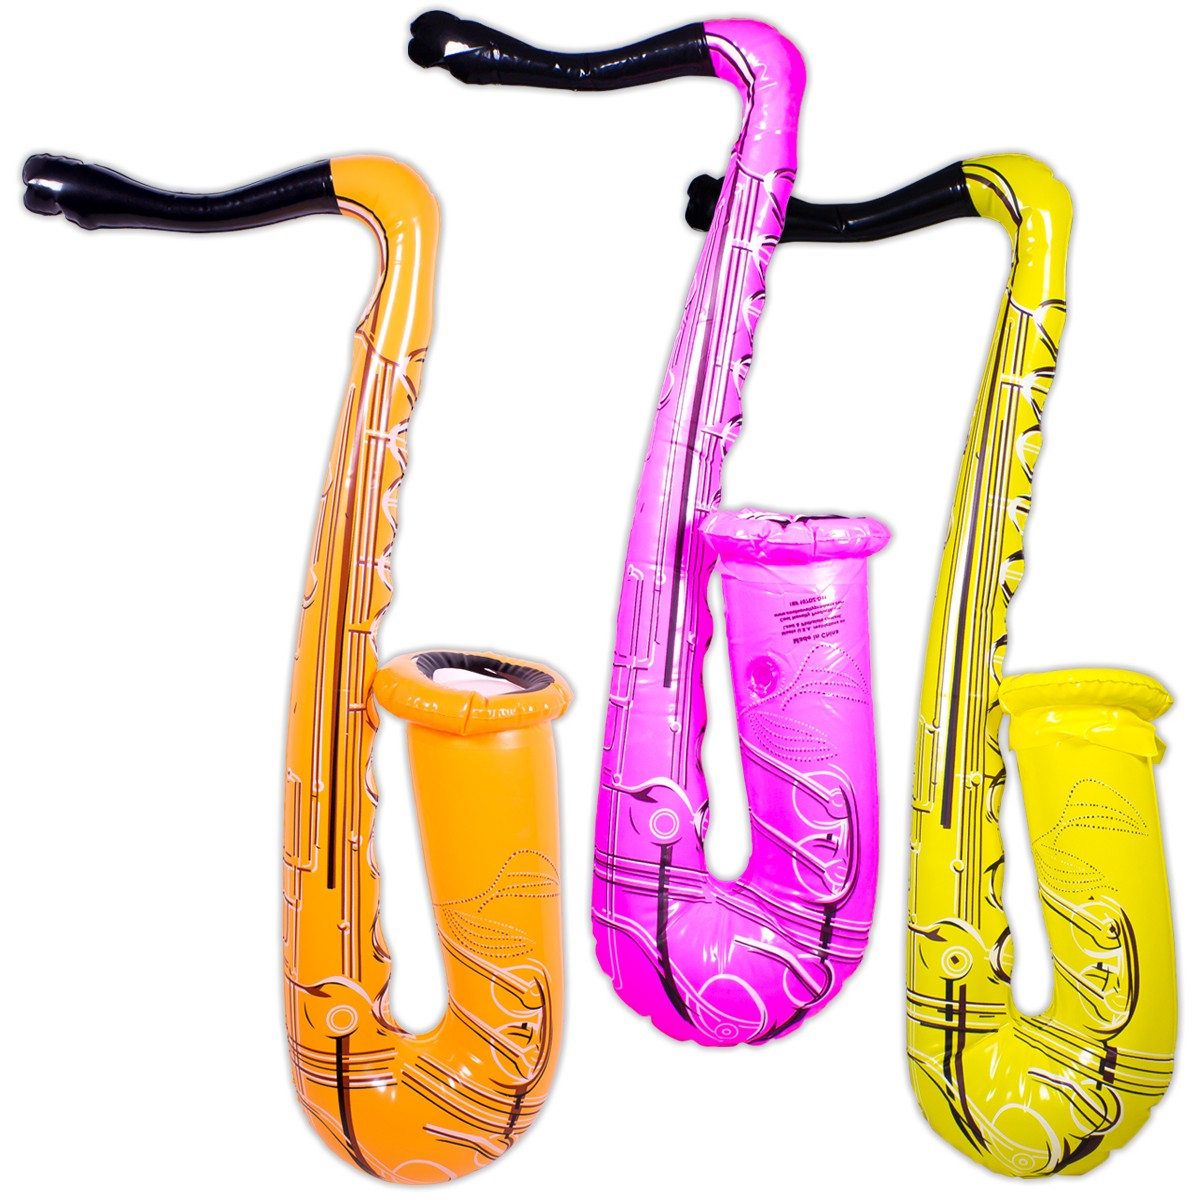 Inflatable Saxophones